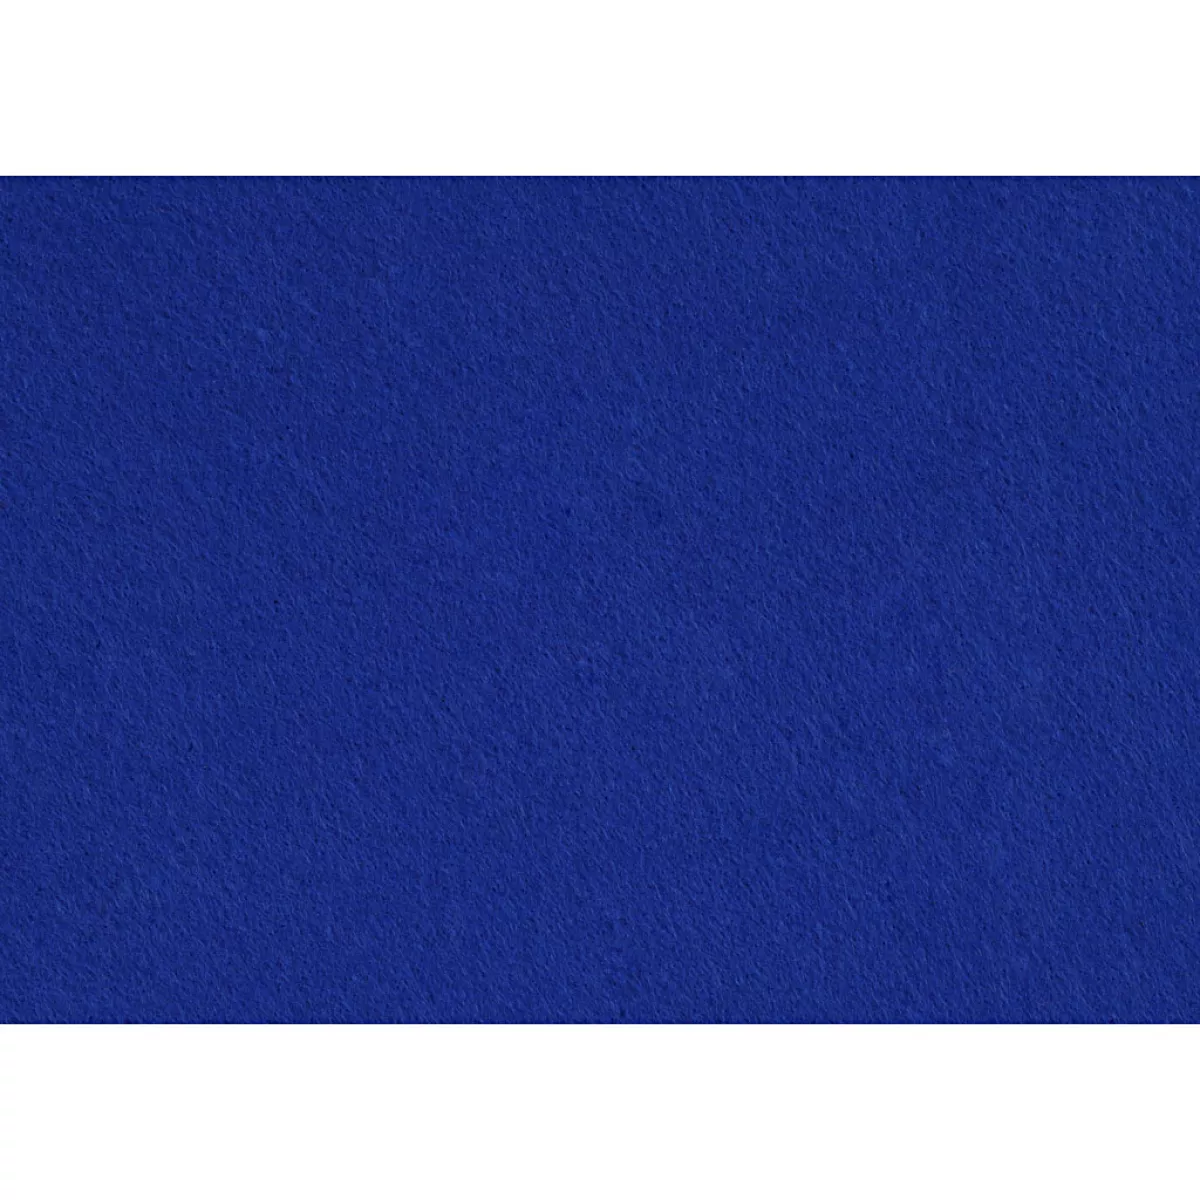 #1 - Hobbyfilt, A4, 210x297 mm, tykkelse 1,5-2 mm, blå, 10 ark/ 1 pk.